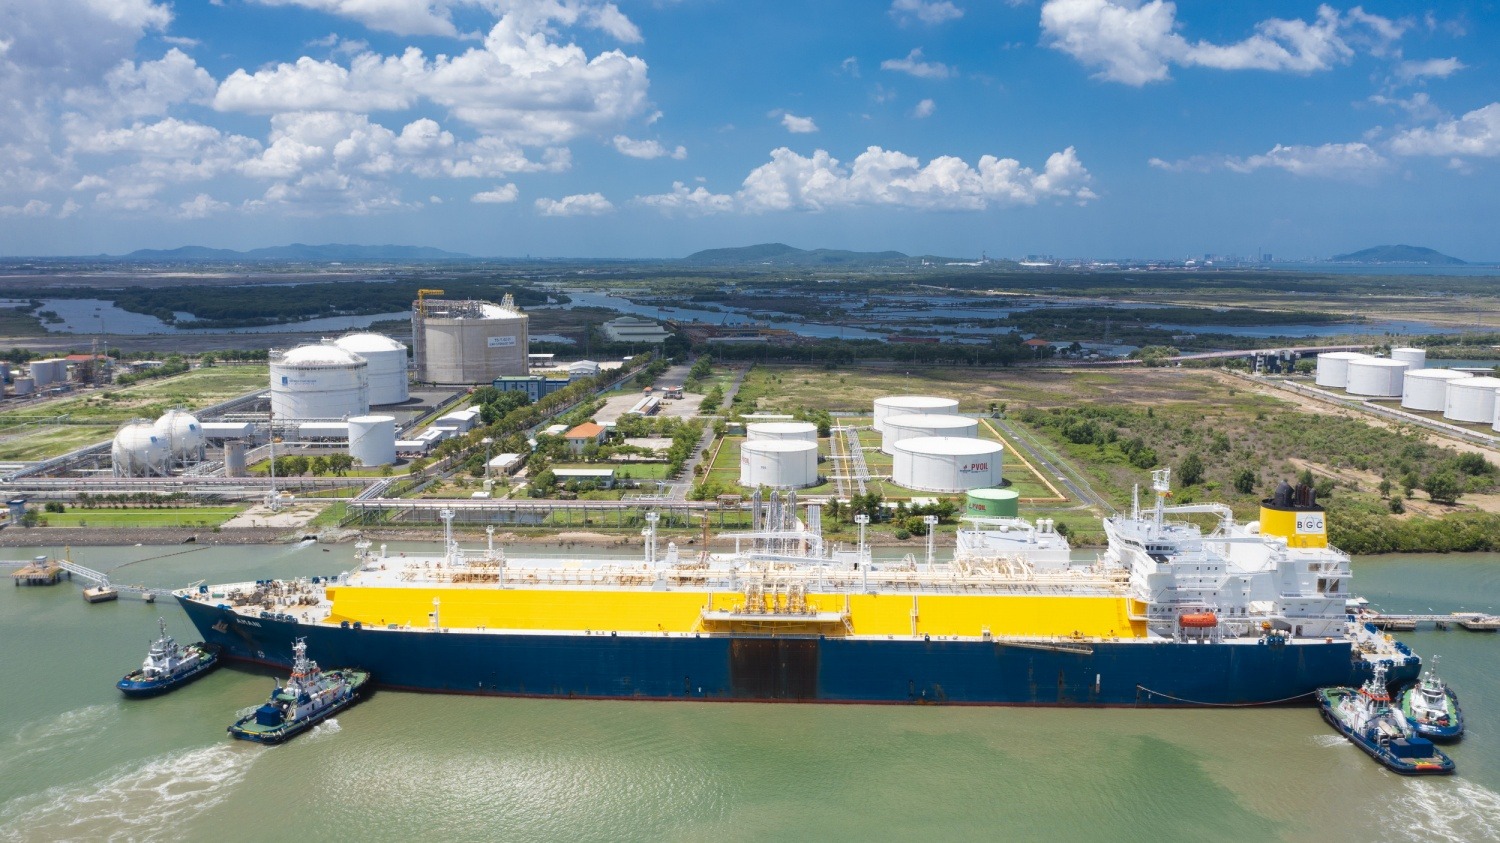 PV GAS là doanh nghiệp đầu tiên và duy nhất đủ điều kiện xuất nhập khẩu LNG, đồng thời sở hữu hệ thống hạ tầng kho cảng LNG hoàn chỉnh tại Việt Nam